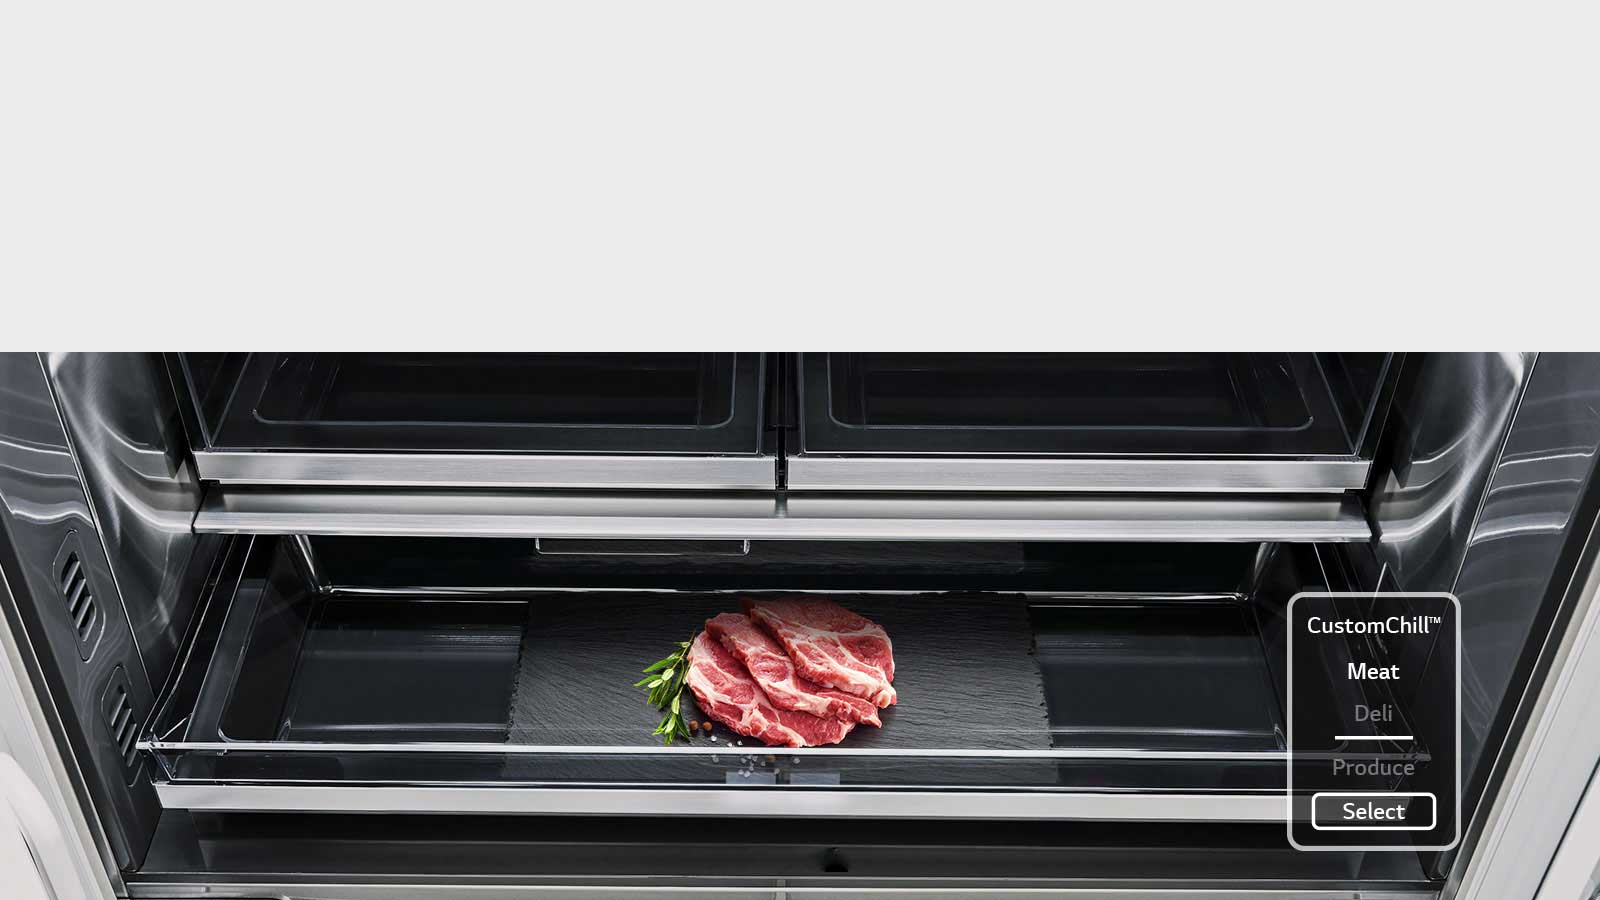 Νωπά κρέατα που διατηρούνται στο ράφι custom chill, στο εσωτερικό του ψυγείου LG SIGNATURE.